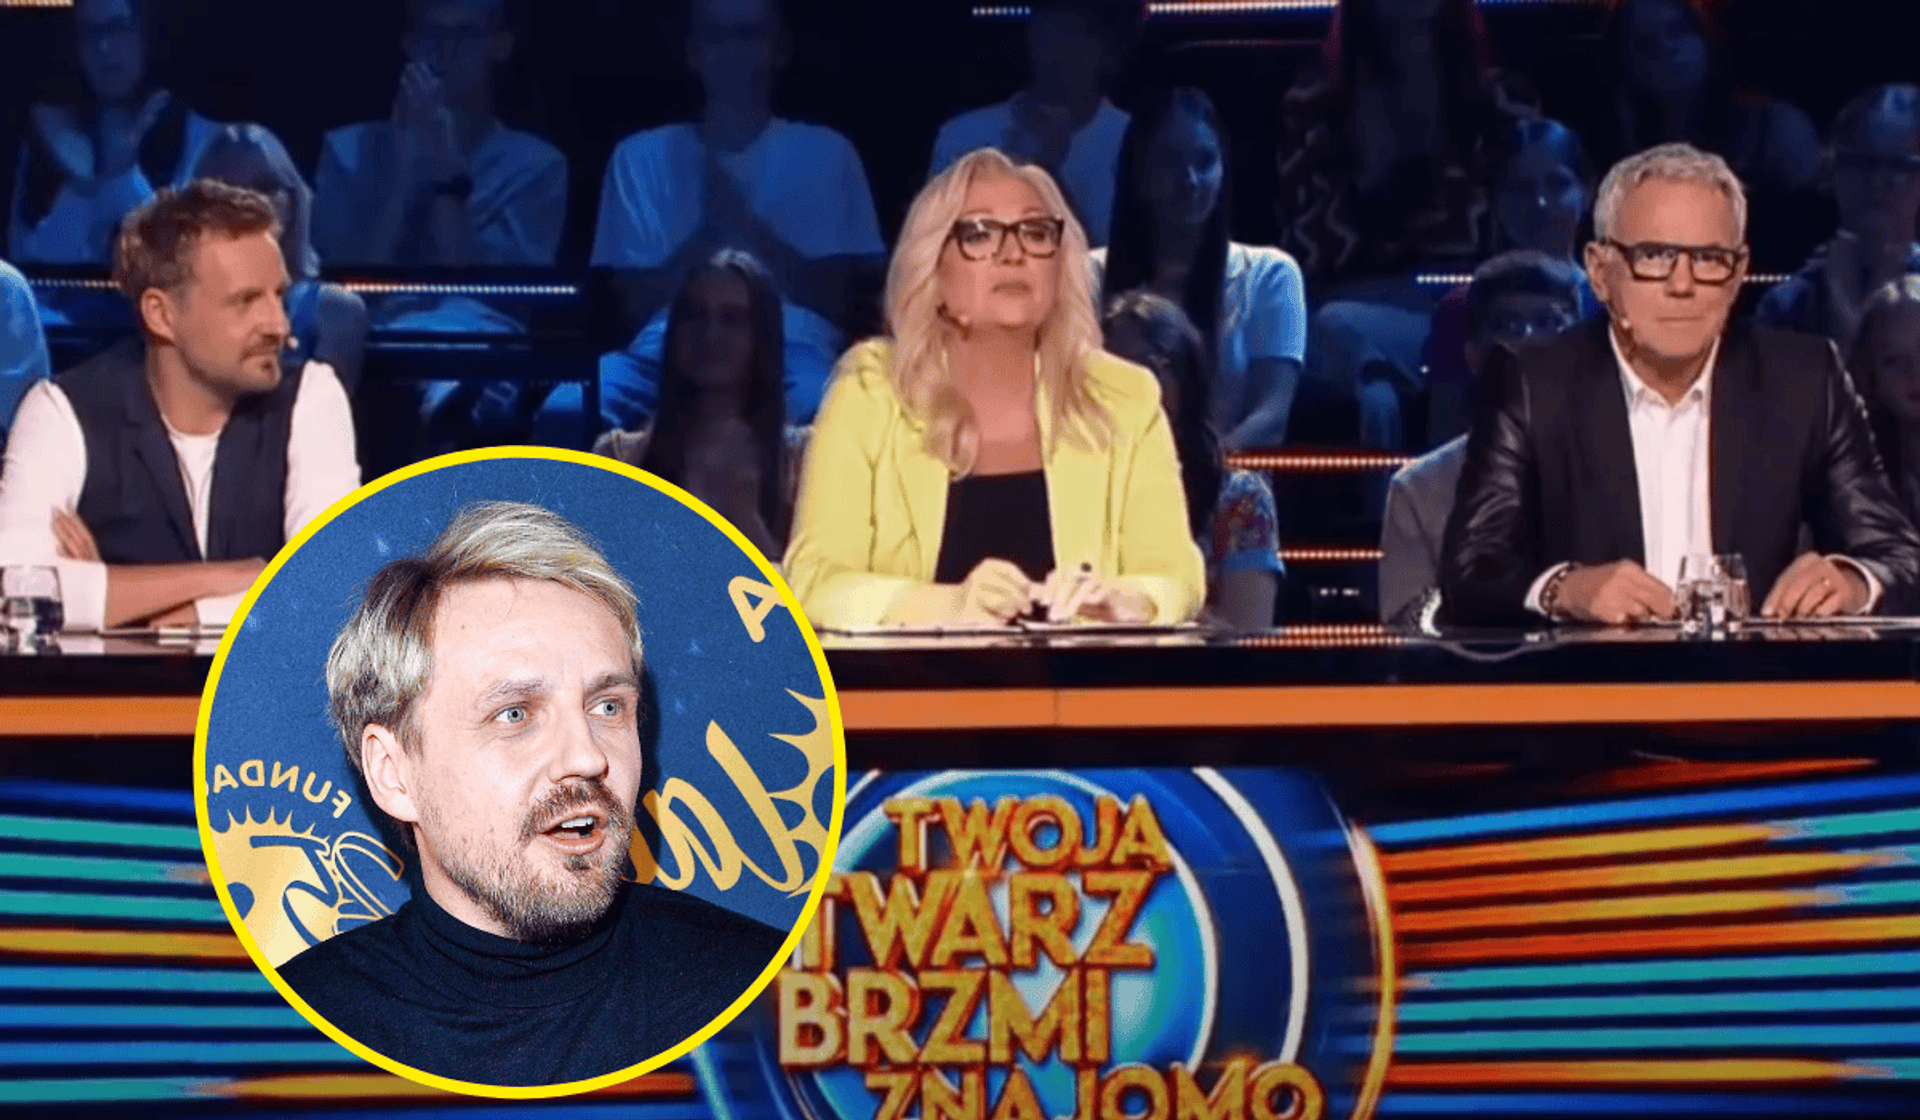 TTBZ jury, Paweł Domagała